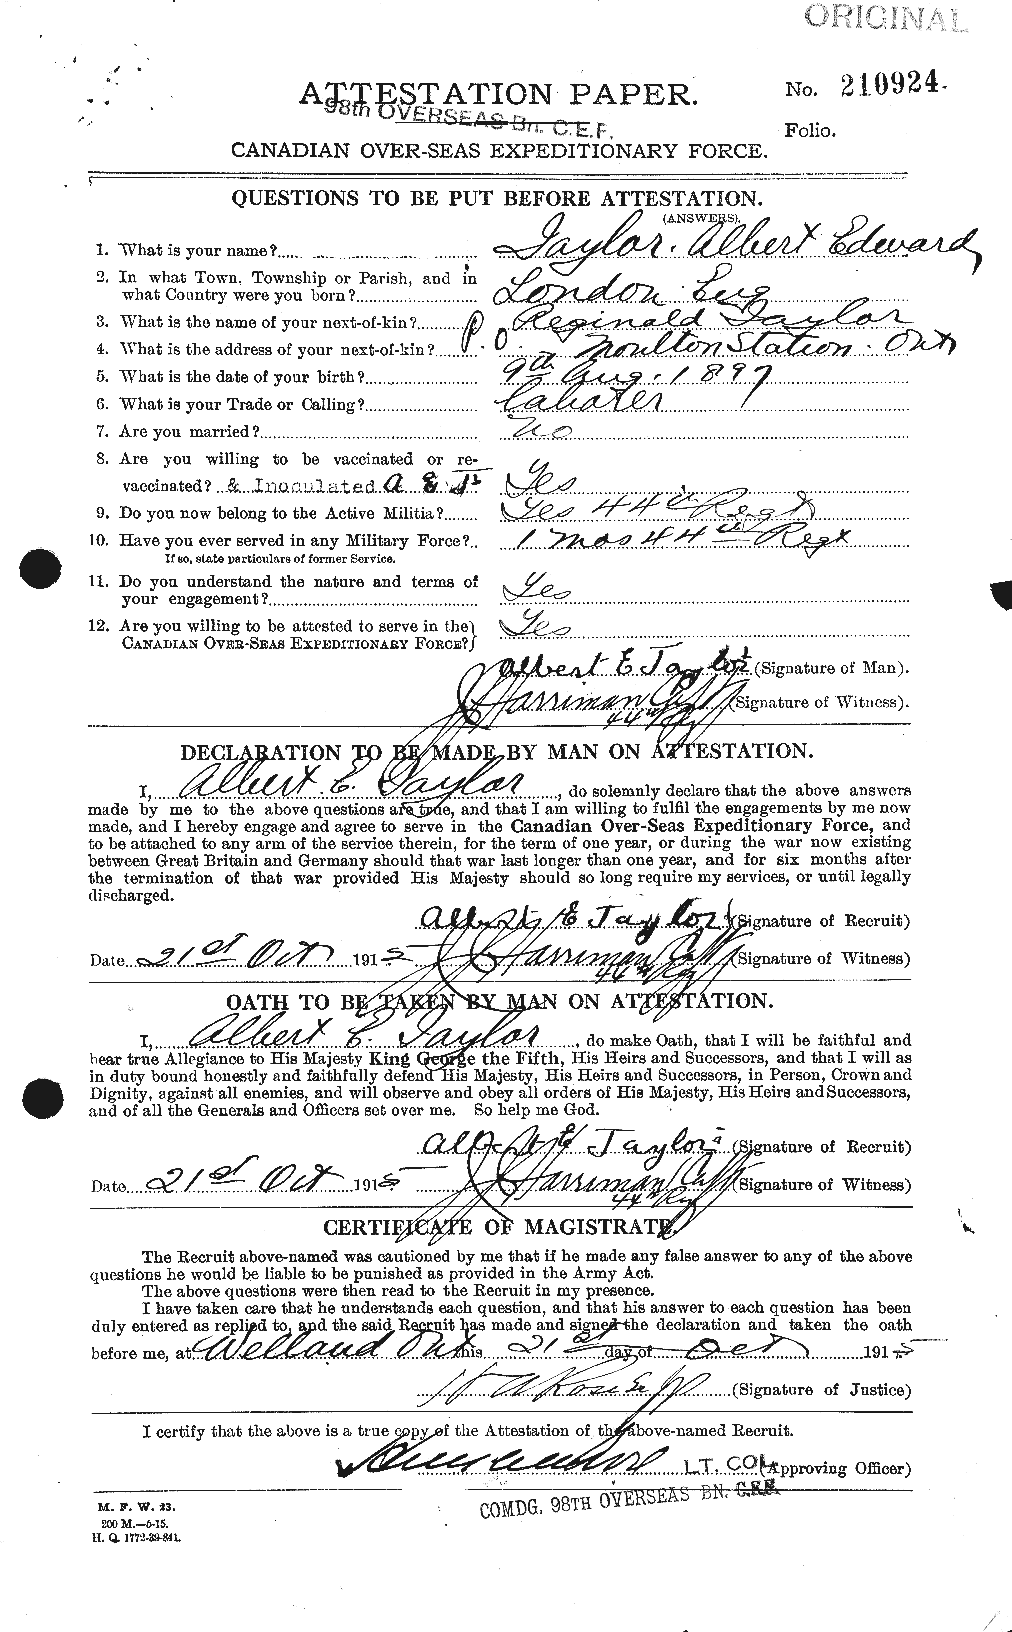 Dossiers du Personnel de la Première Guerre mondiale - CEC 626106a